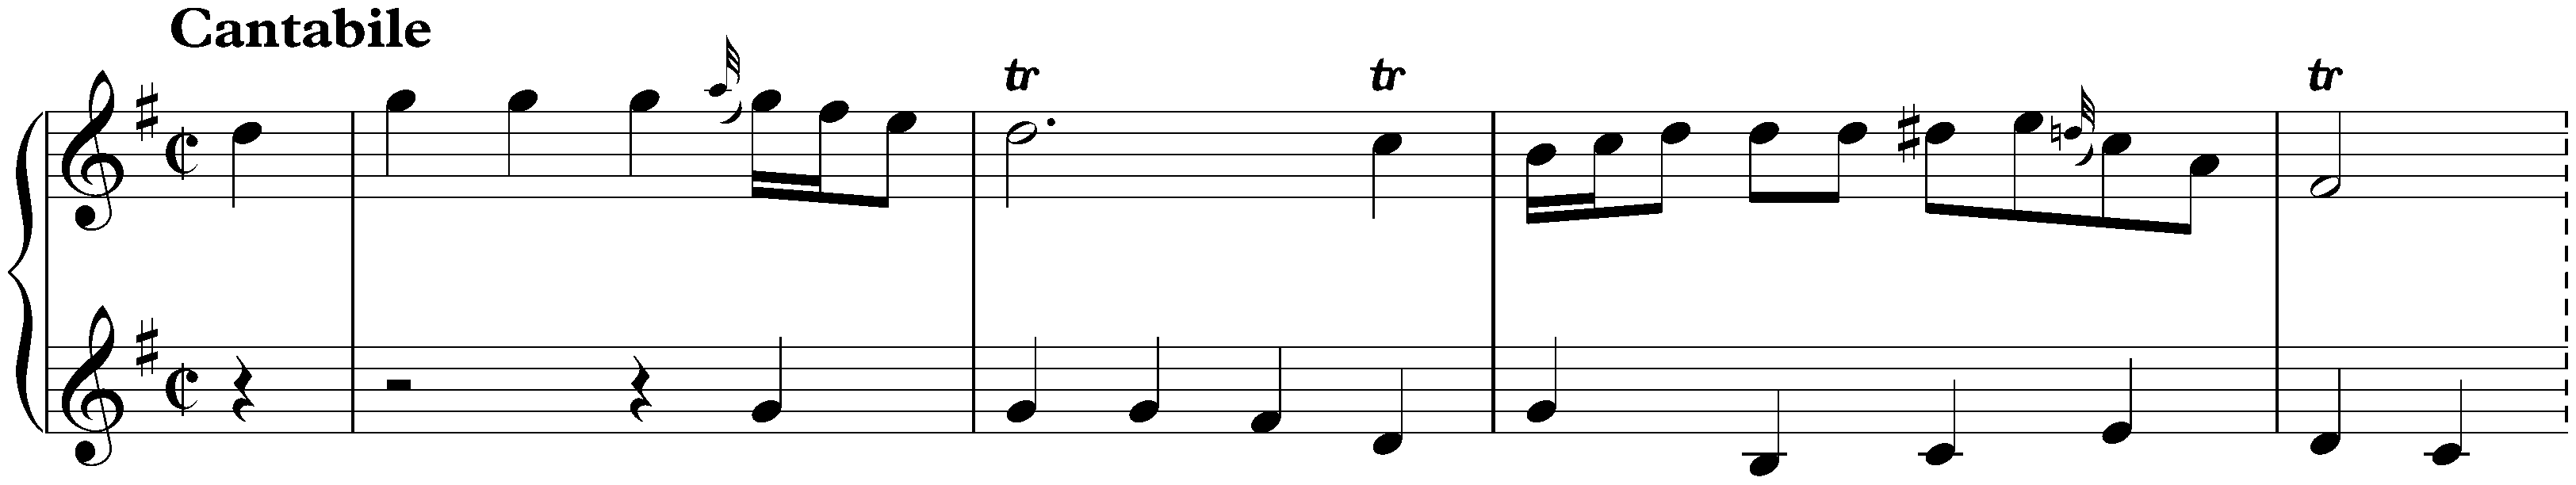 Sonata in G major, K. 144